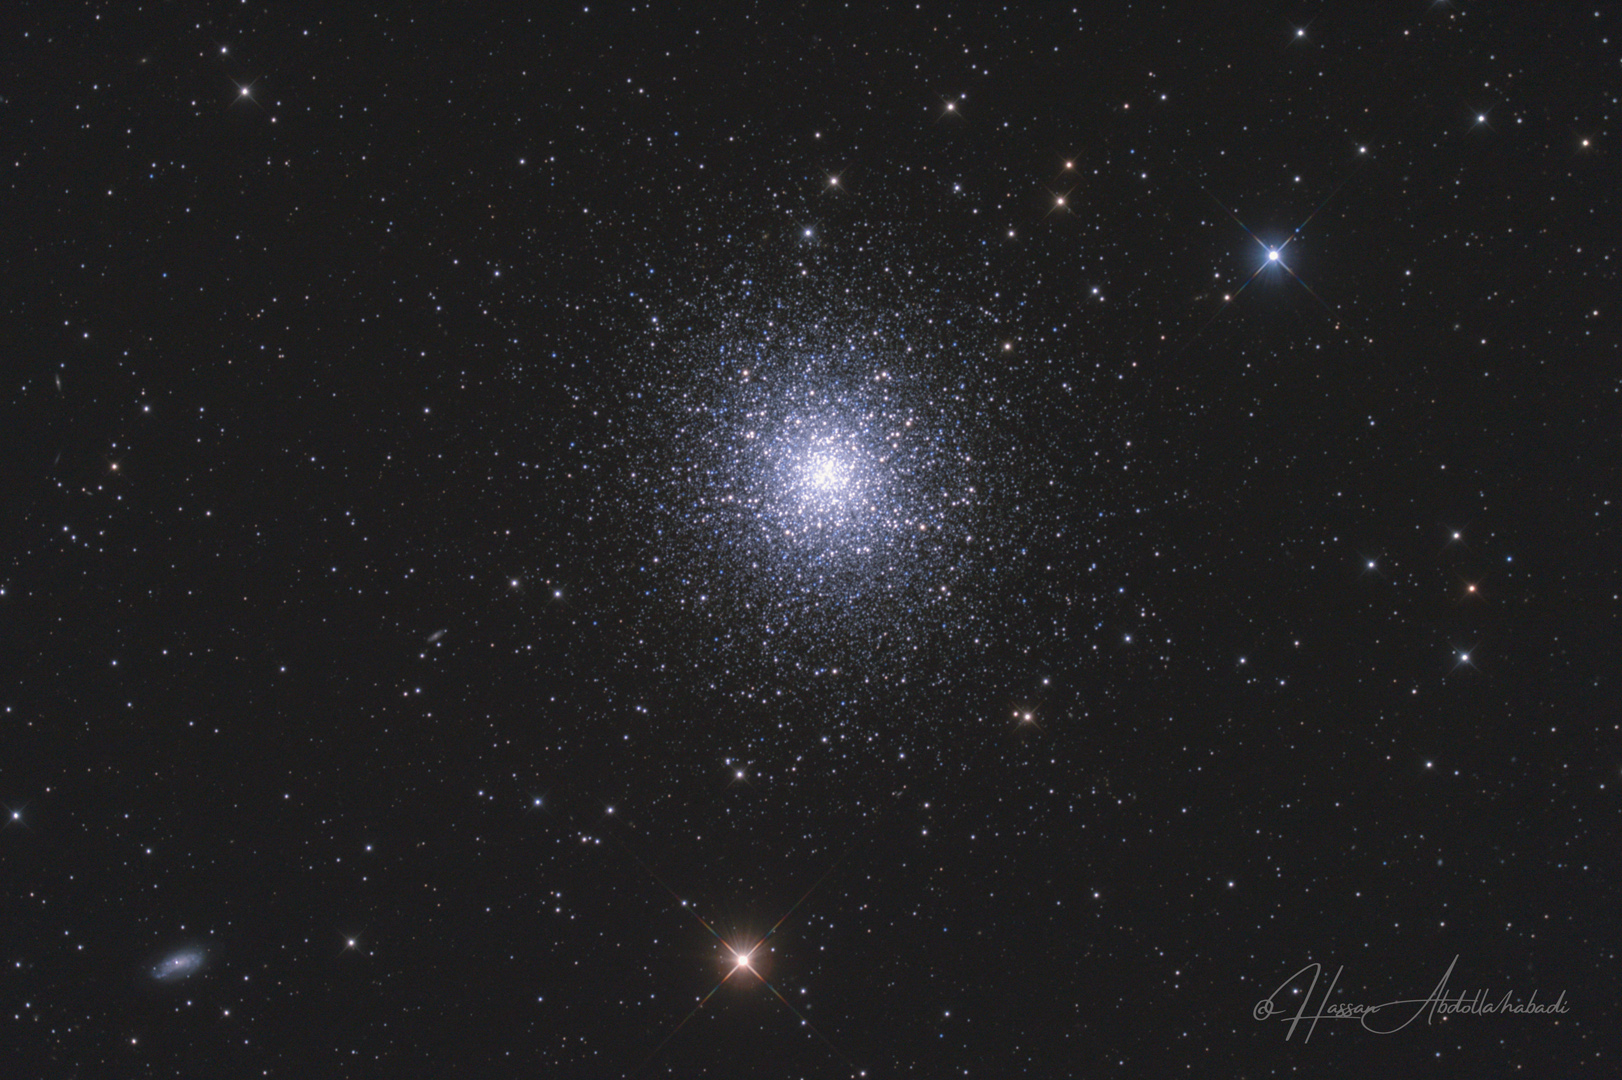 The Great Globular Cluster in Hercules